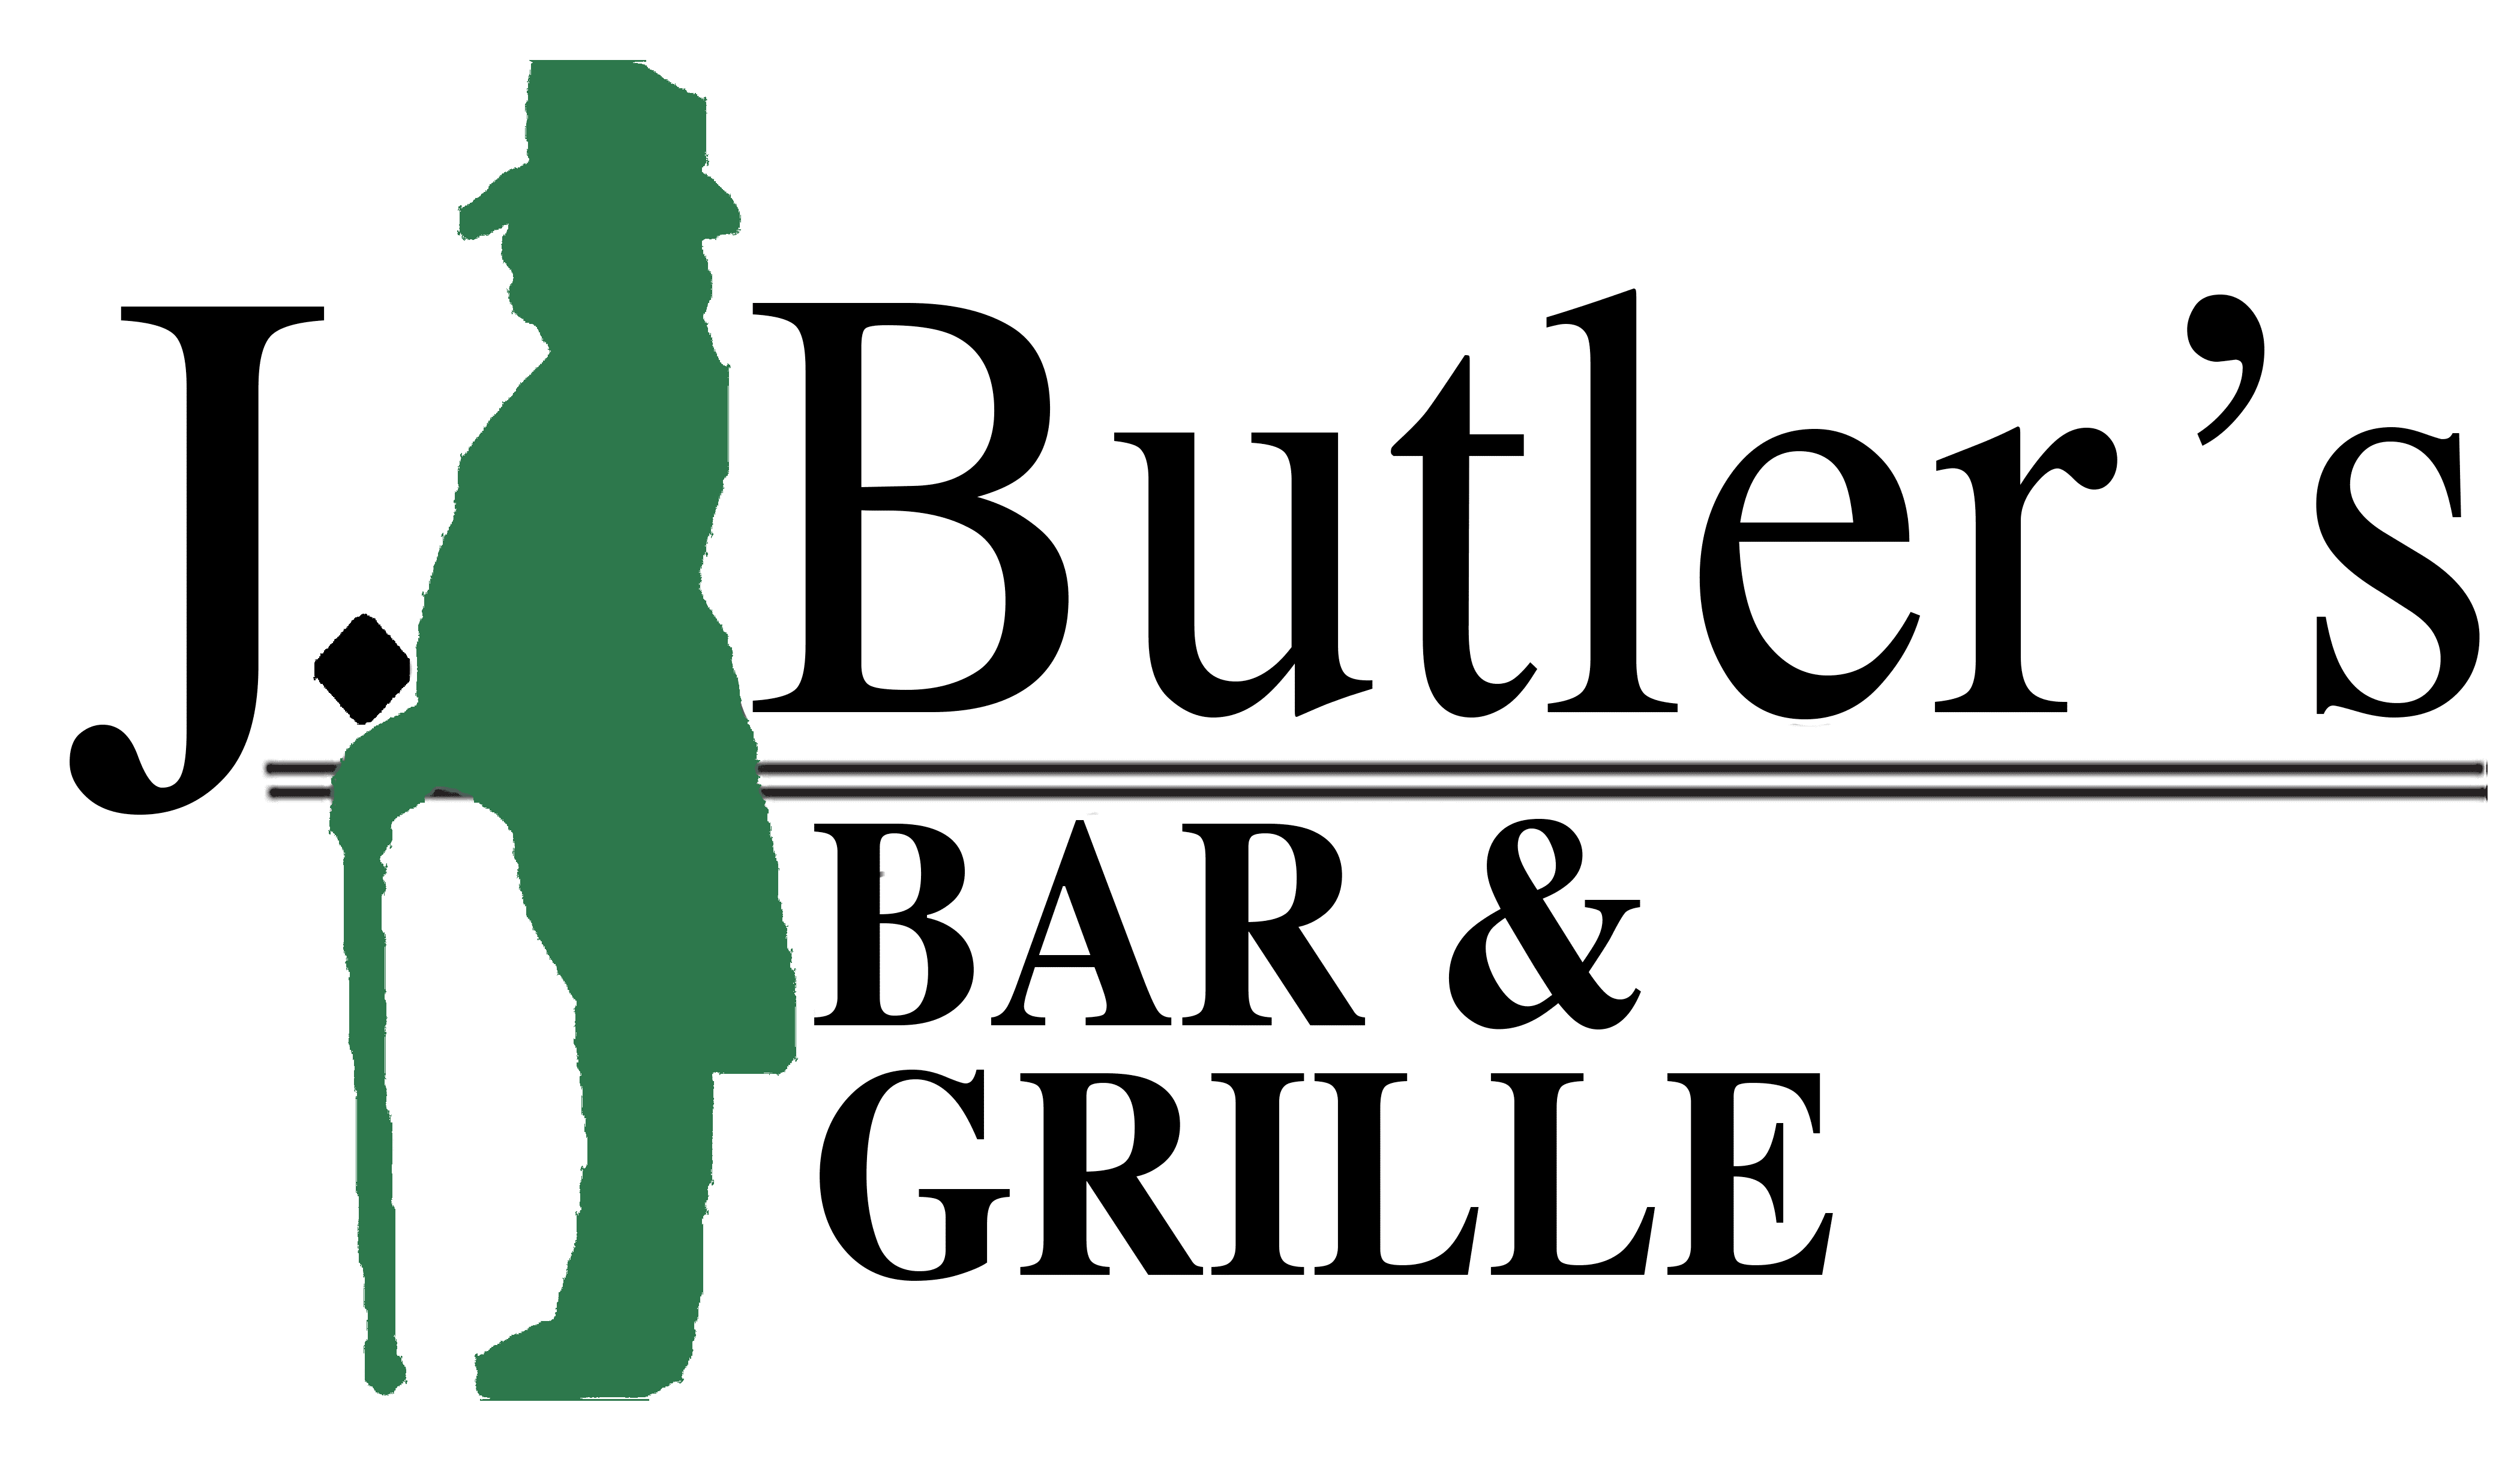 J. Butler’s Bar & Grille